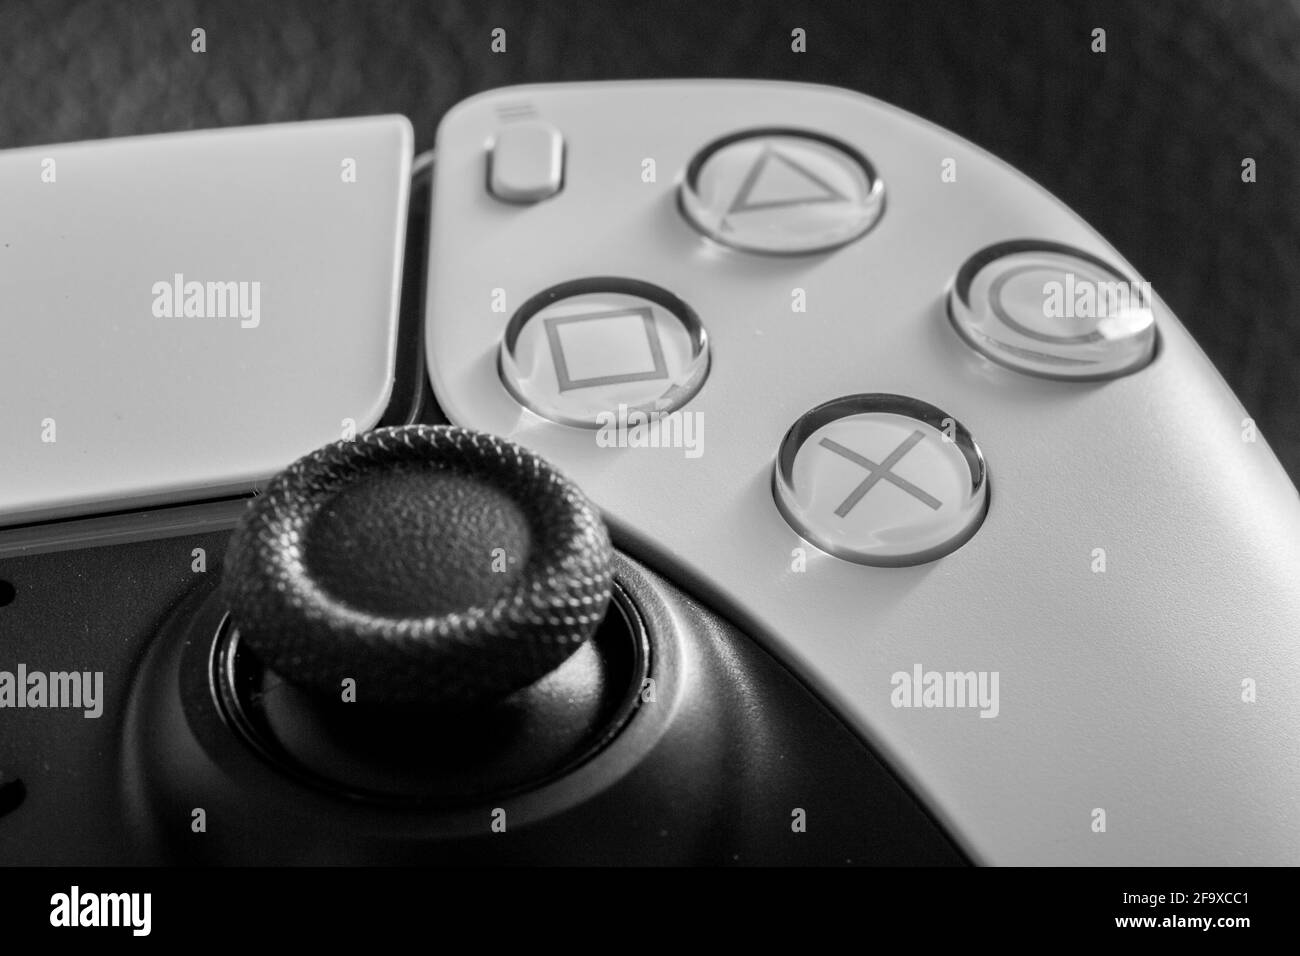 Primer plano de un dispositivo de juego PlayStation 5 con botones y joystick Foto de stock